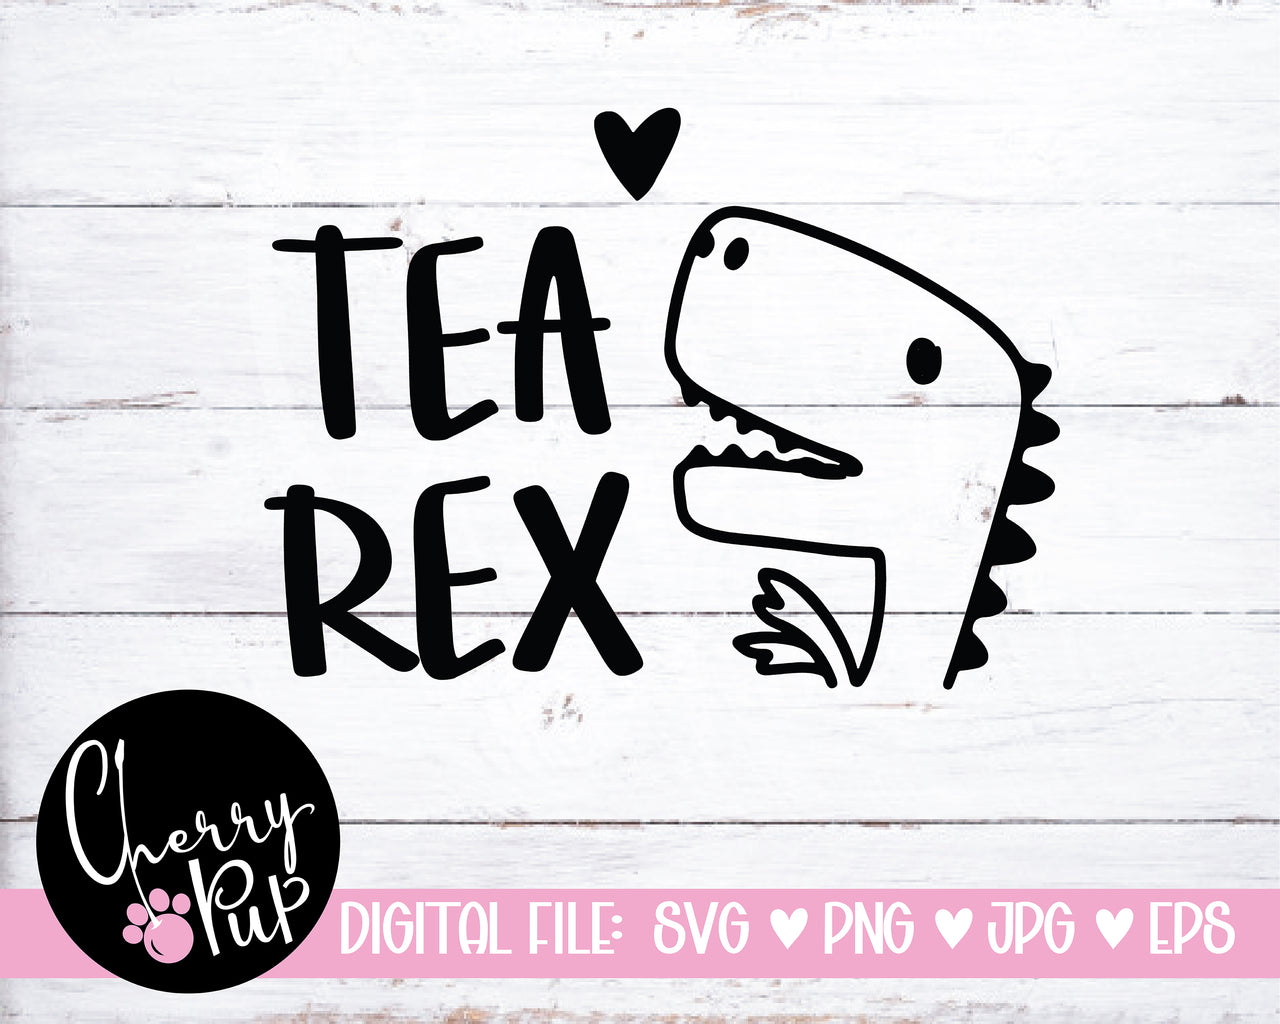 Tea Rex SVG